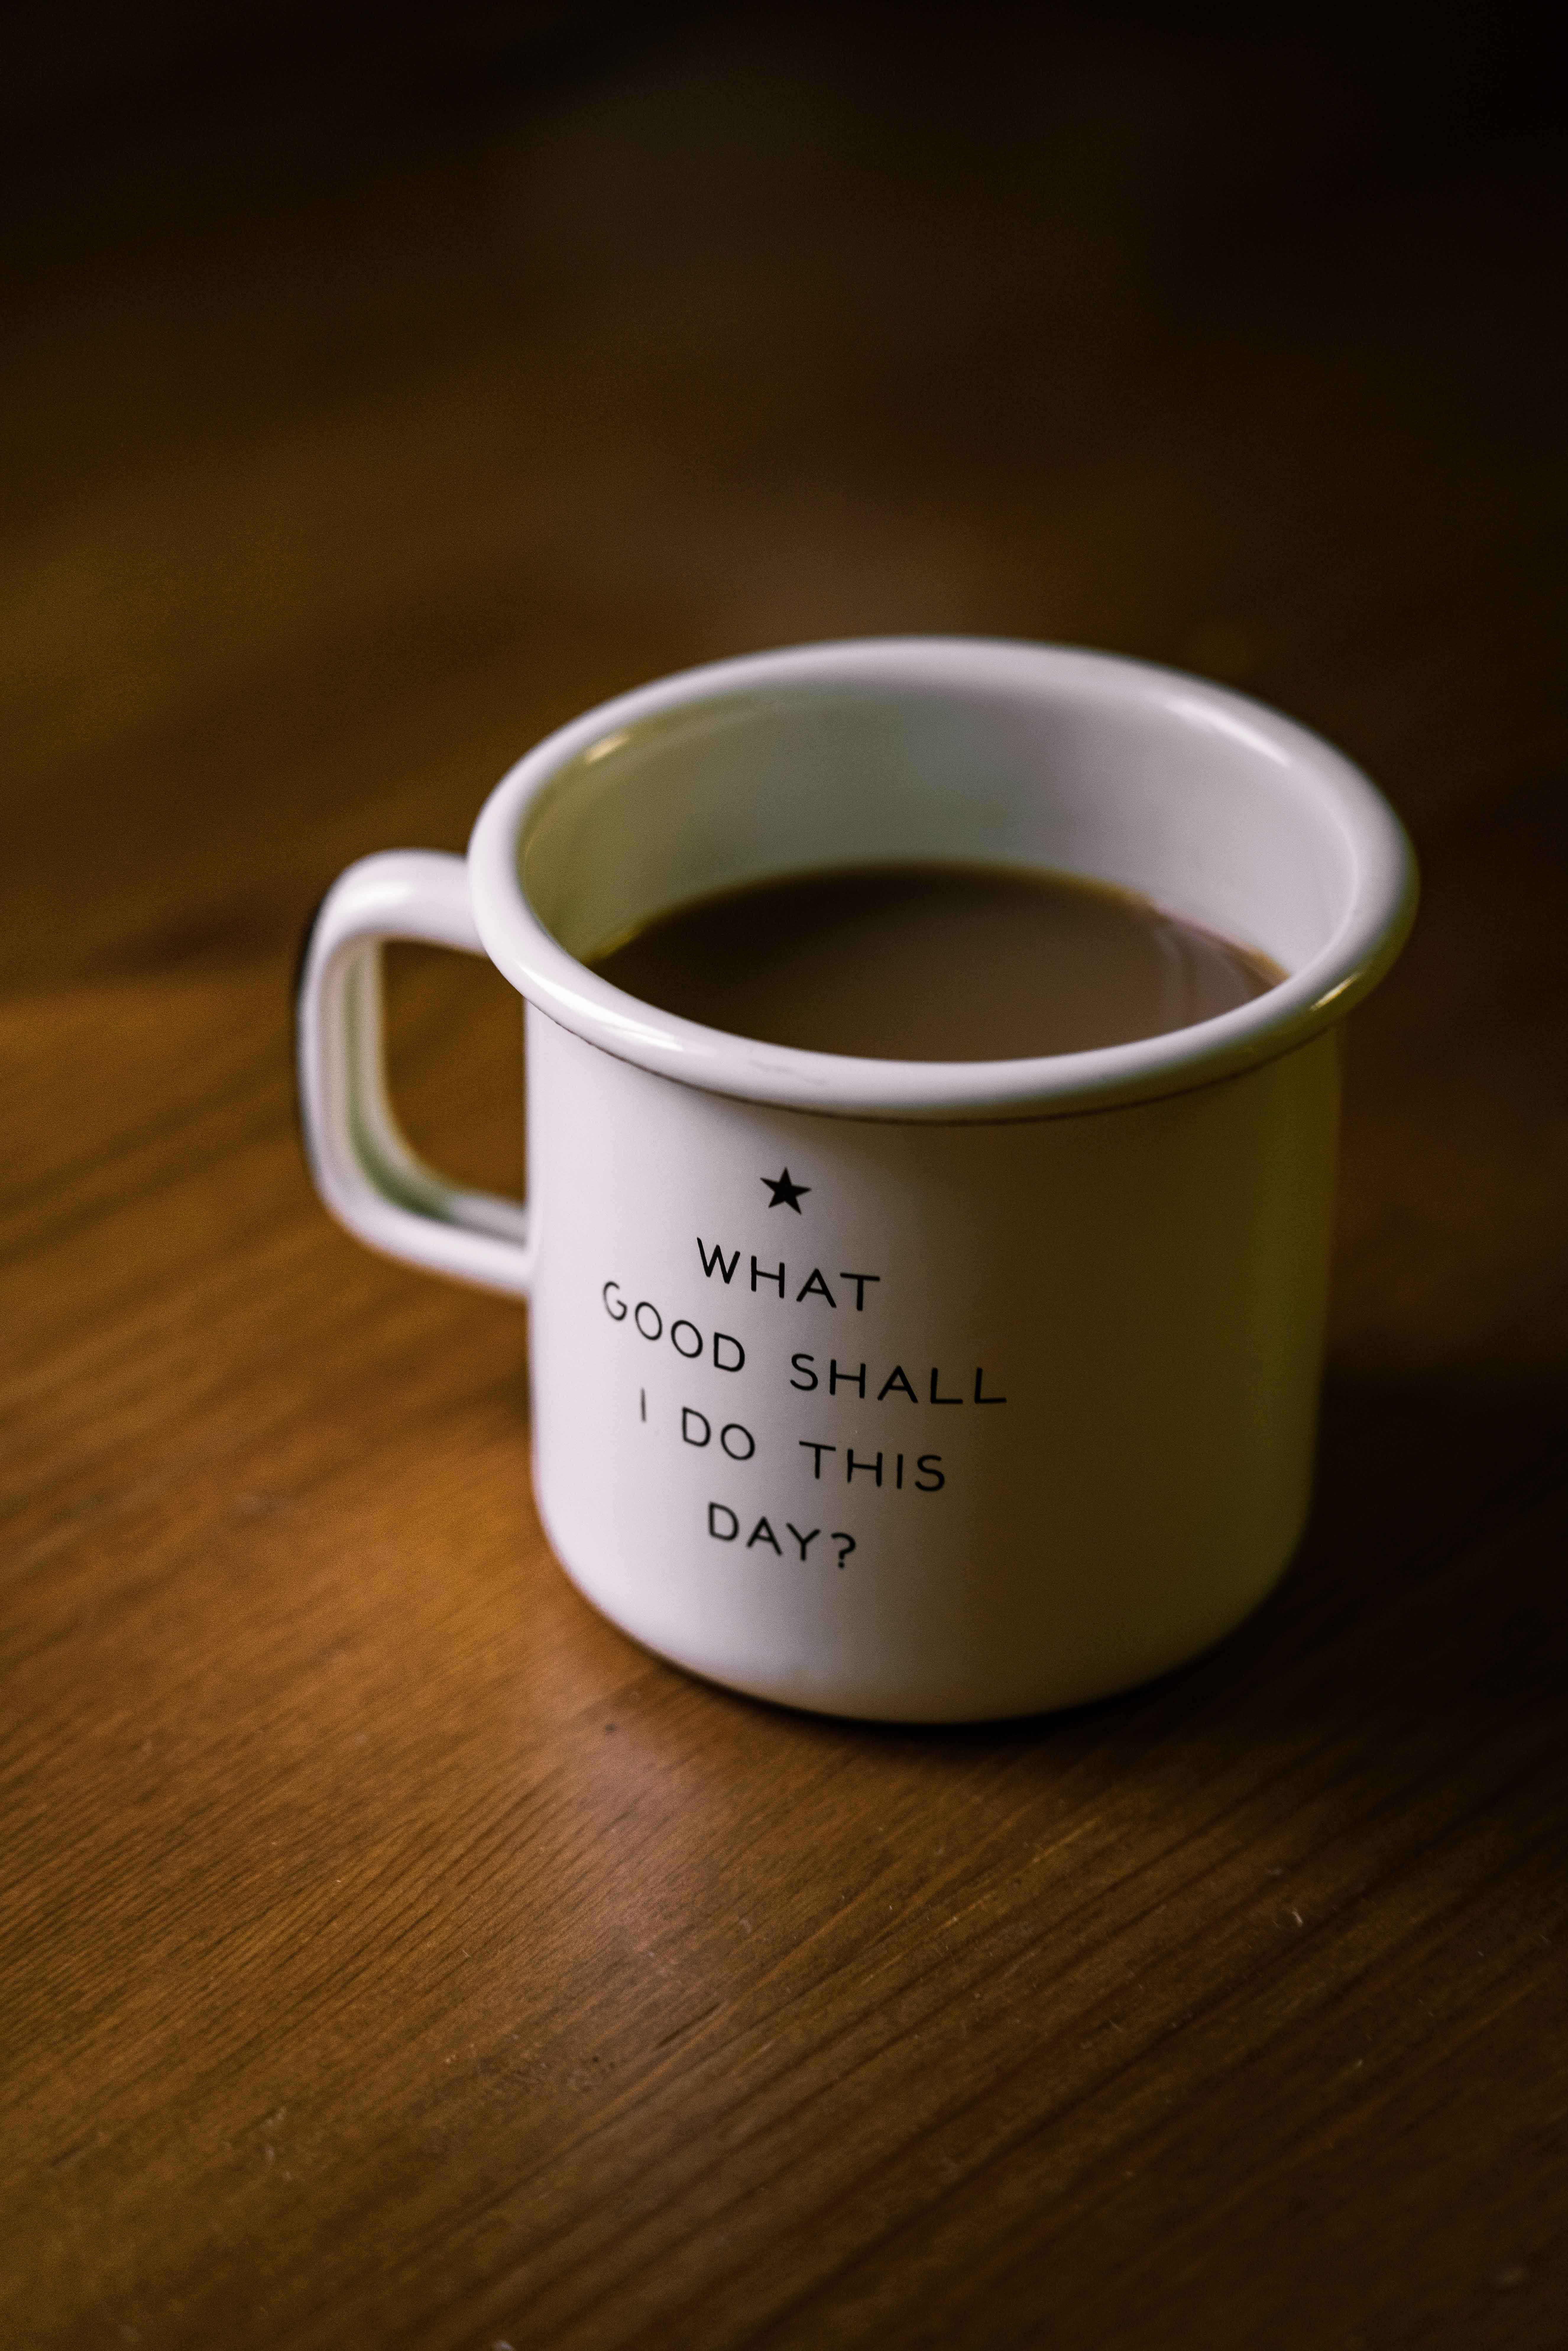 Une tasse remplie de café est posée sur une table. La tasse est ornée d’un texte décoratif qui dit : « Quel bien vais-je faire aujourd’hui? »